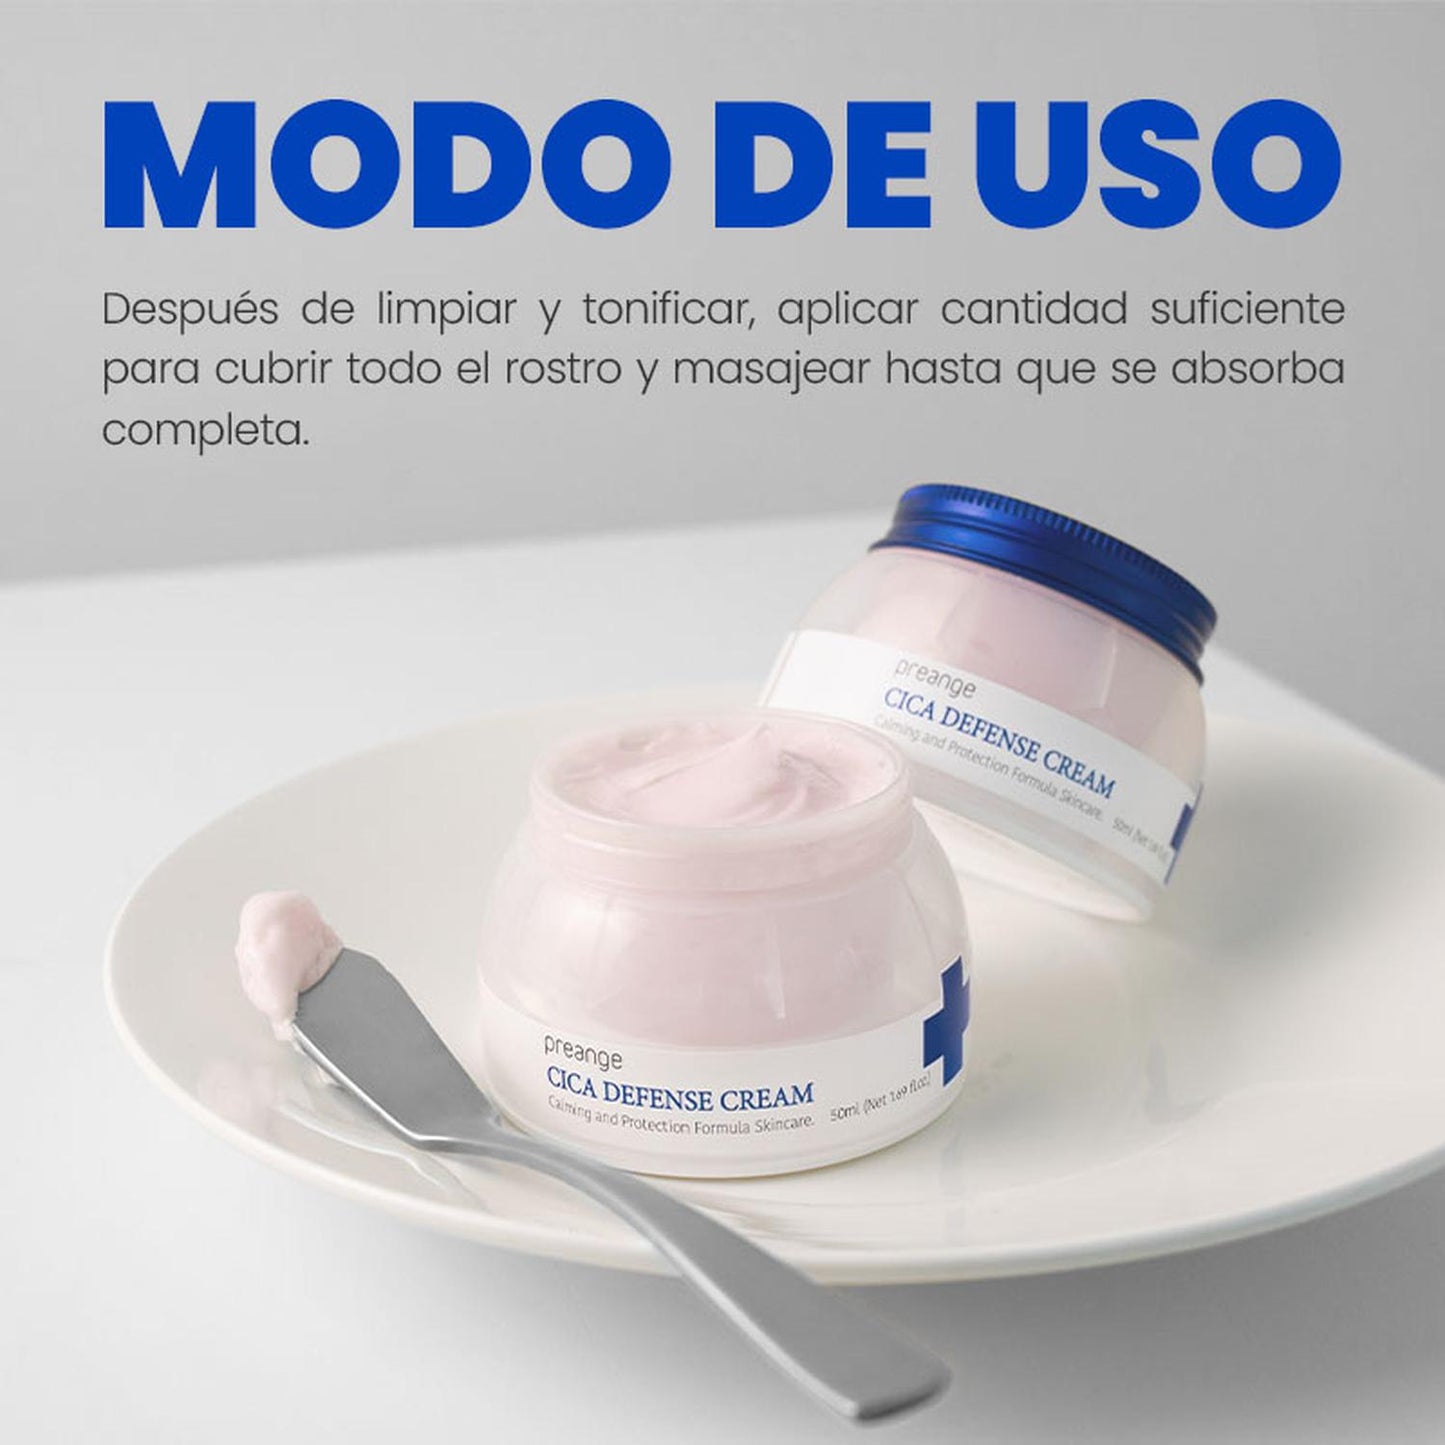 Crema Hidratante Reparadora PREANGE Doble Cica 50ml